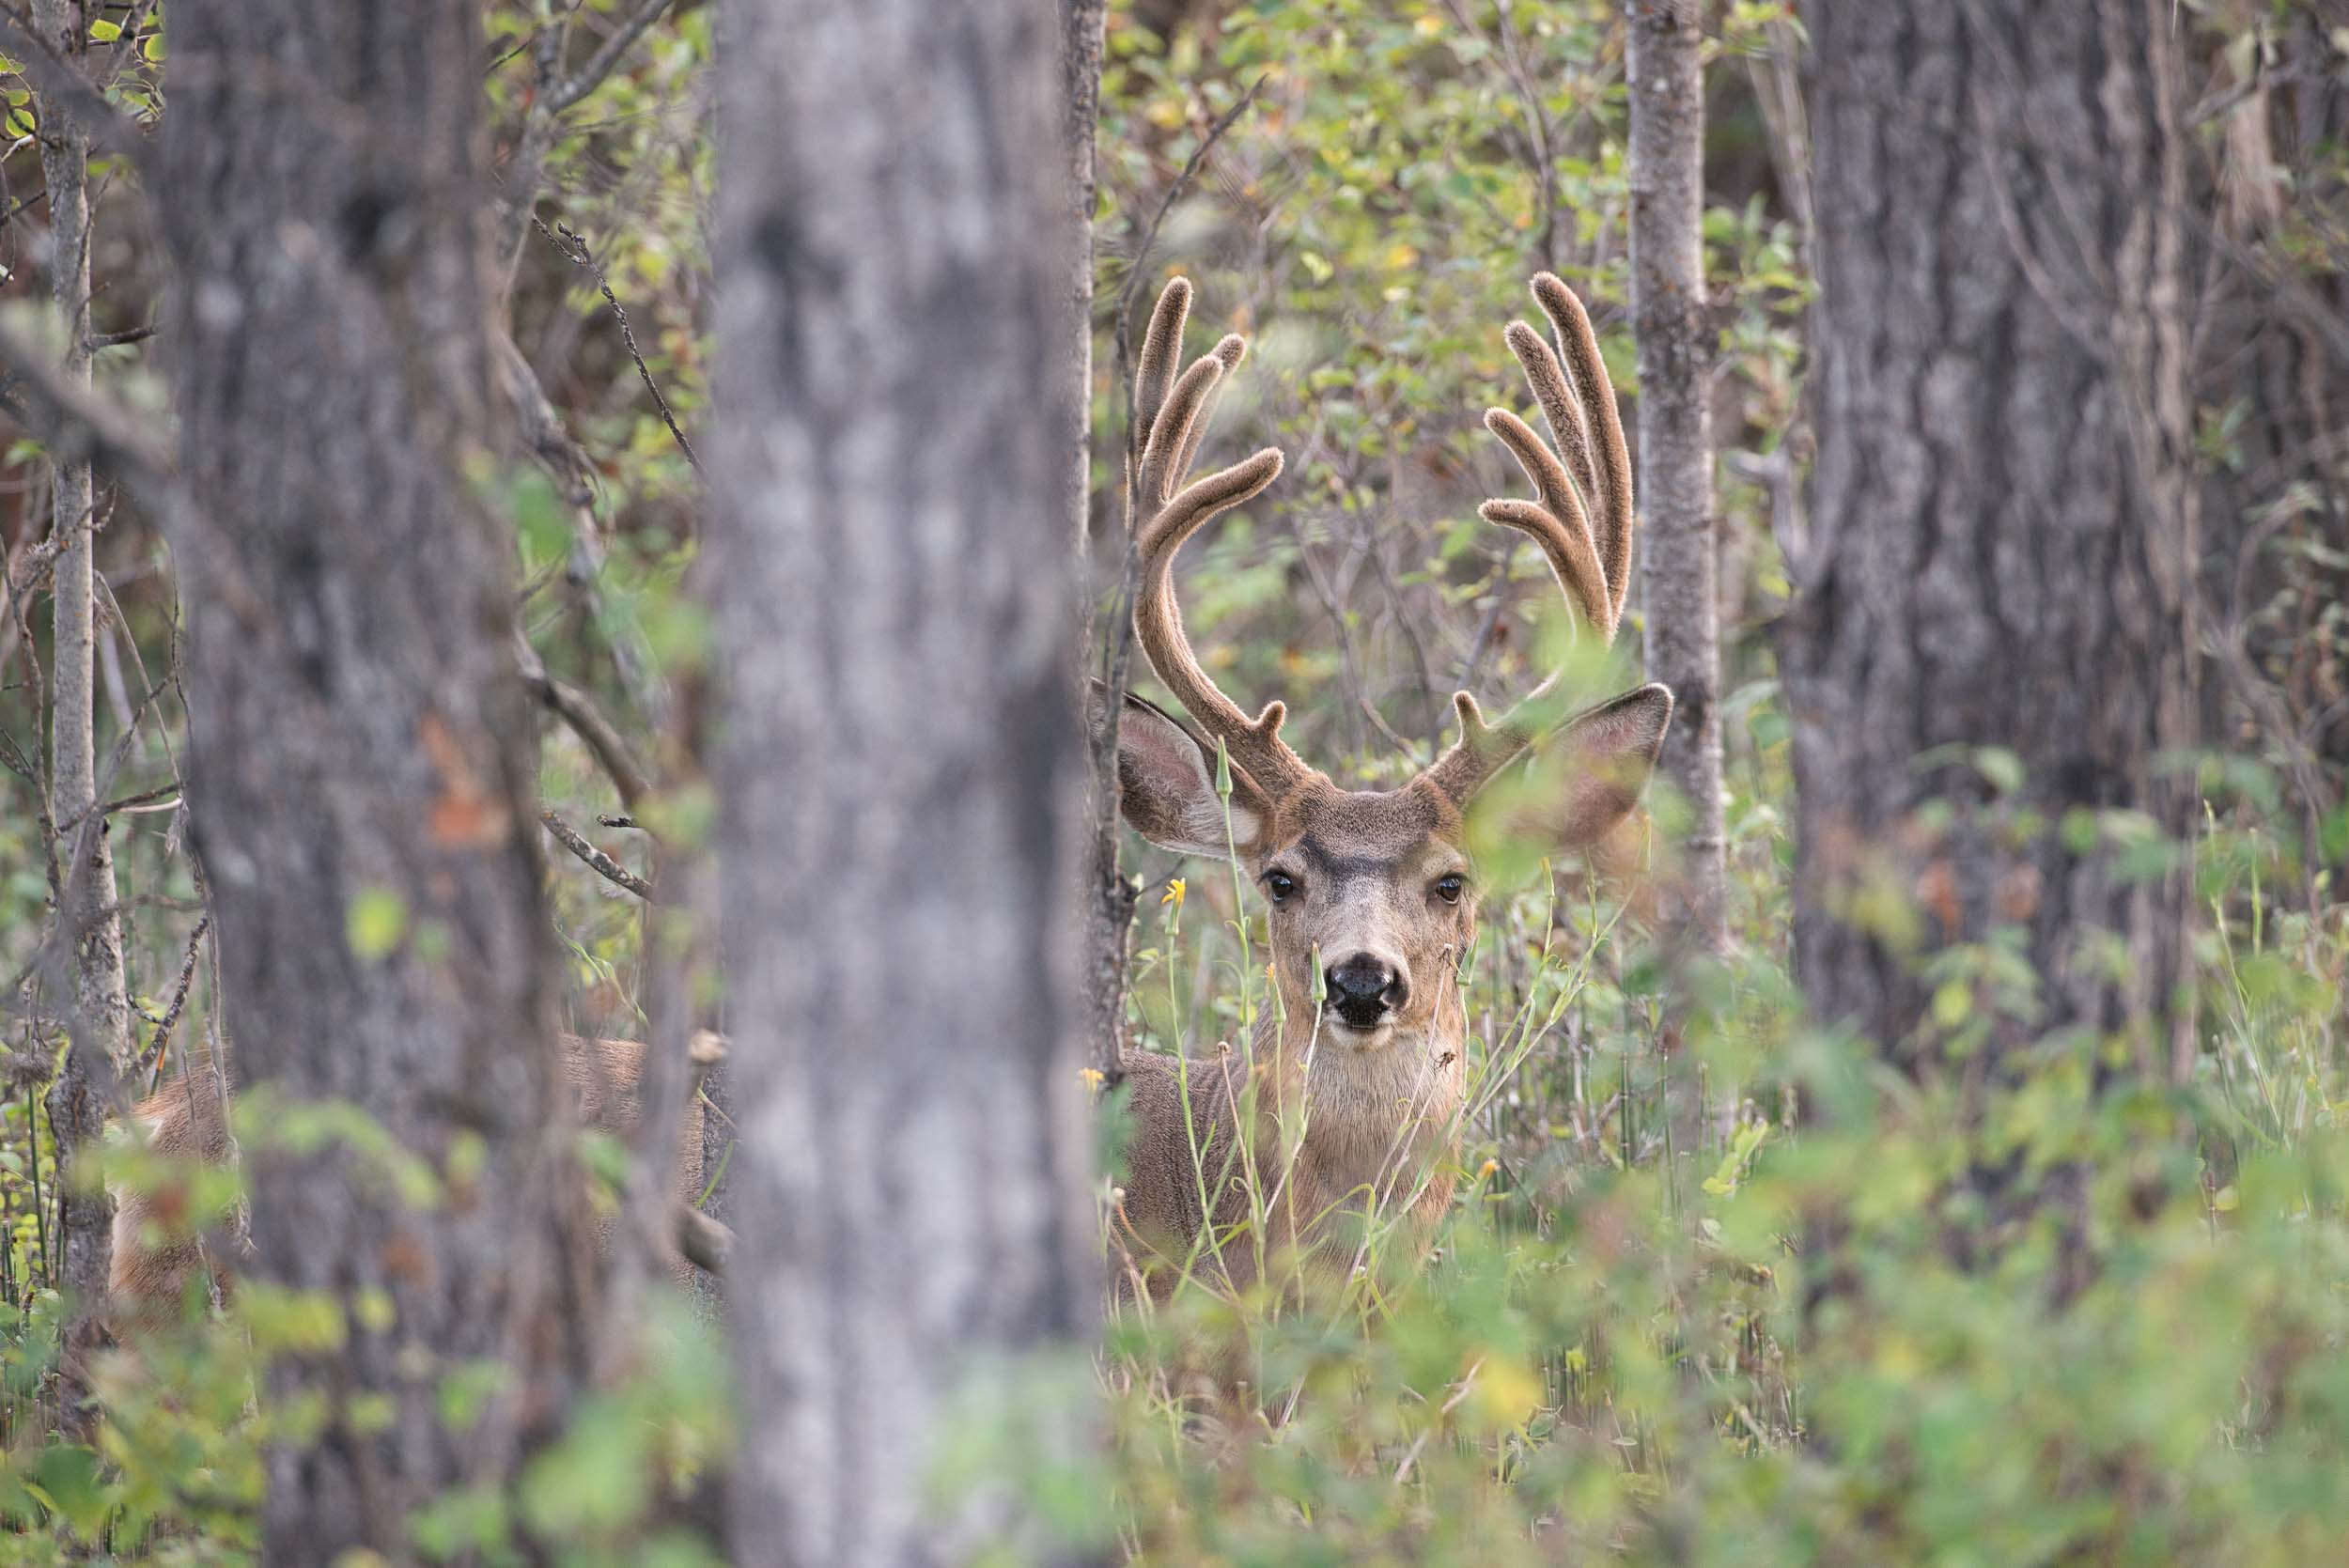 Deer at 108 Mile Ranch. Credit: Destination BC/Michael Bednar